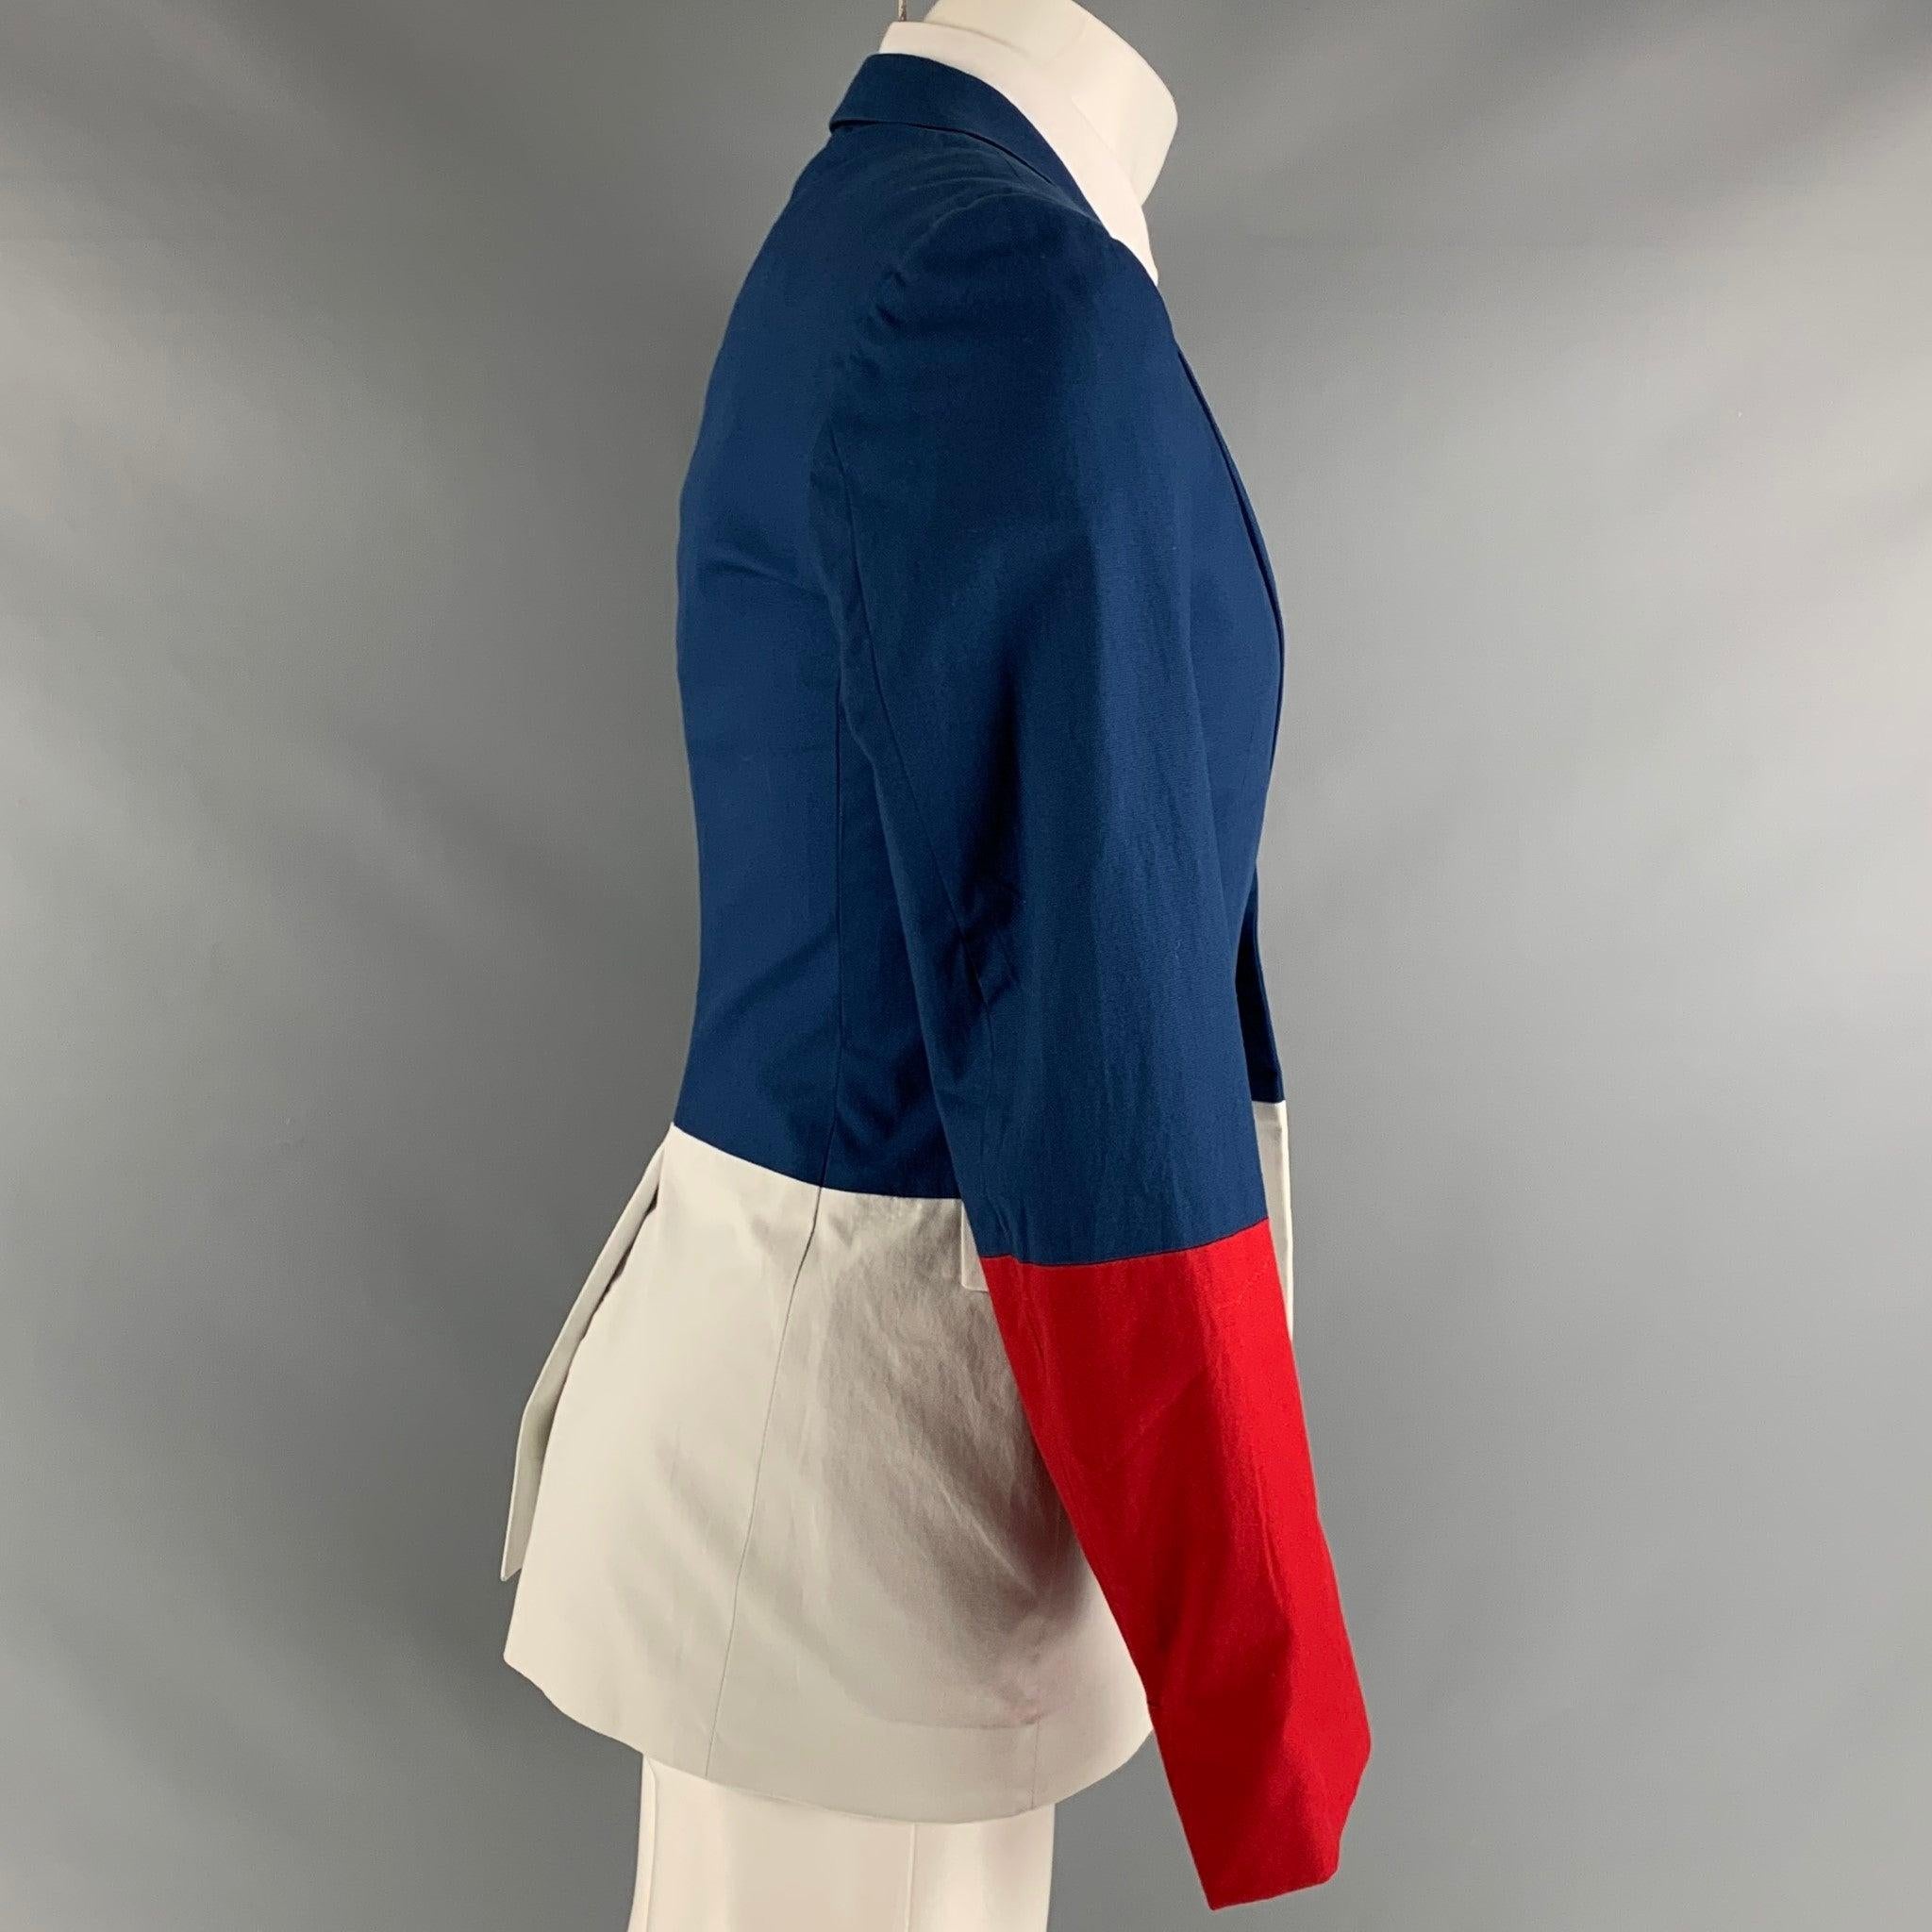 Le manteau de sport JIL SANDER Tailor Made se compose d'un tissu de coton bleu, rouge et blanc, d'une doublure complète, d'un motif color block, d'un revers échancré, de poches à rabat et d'une fermeture à bouton unique. Fabriqué en Italie.